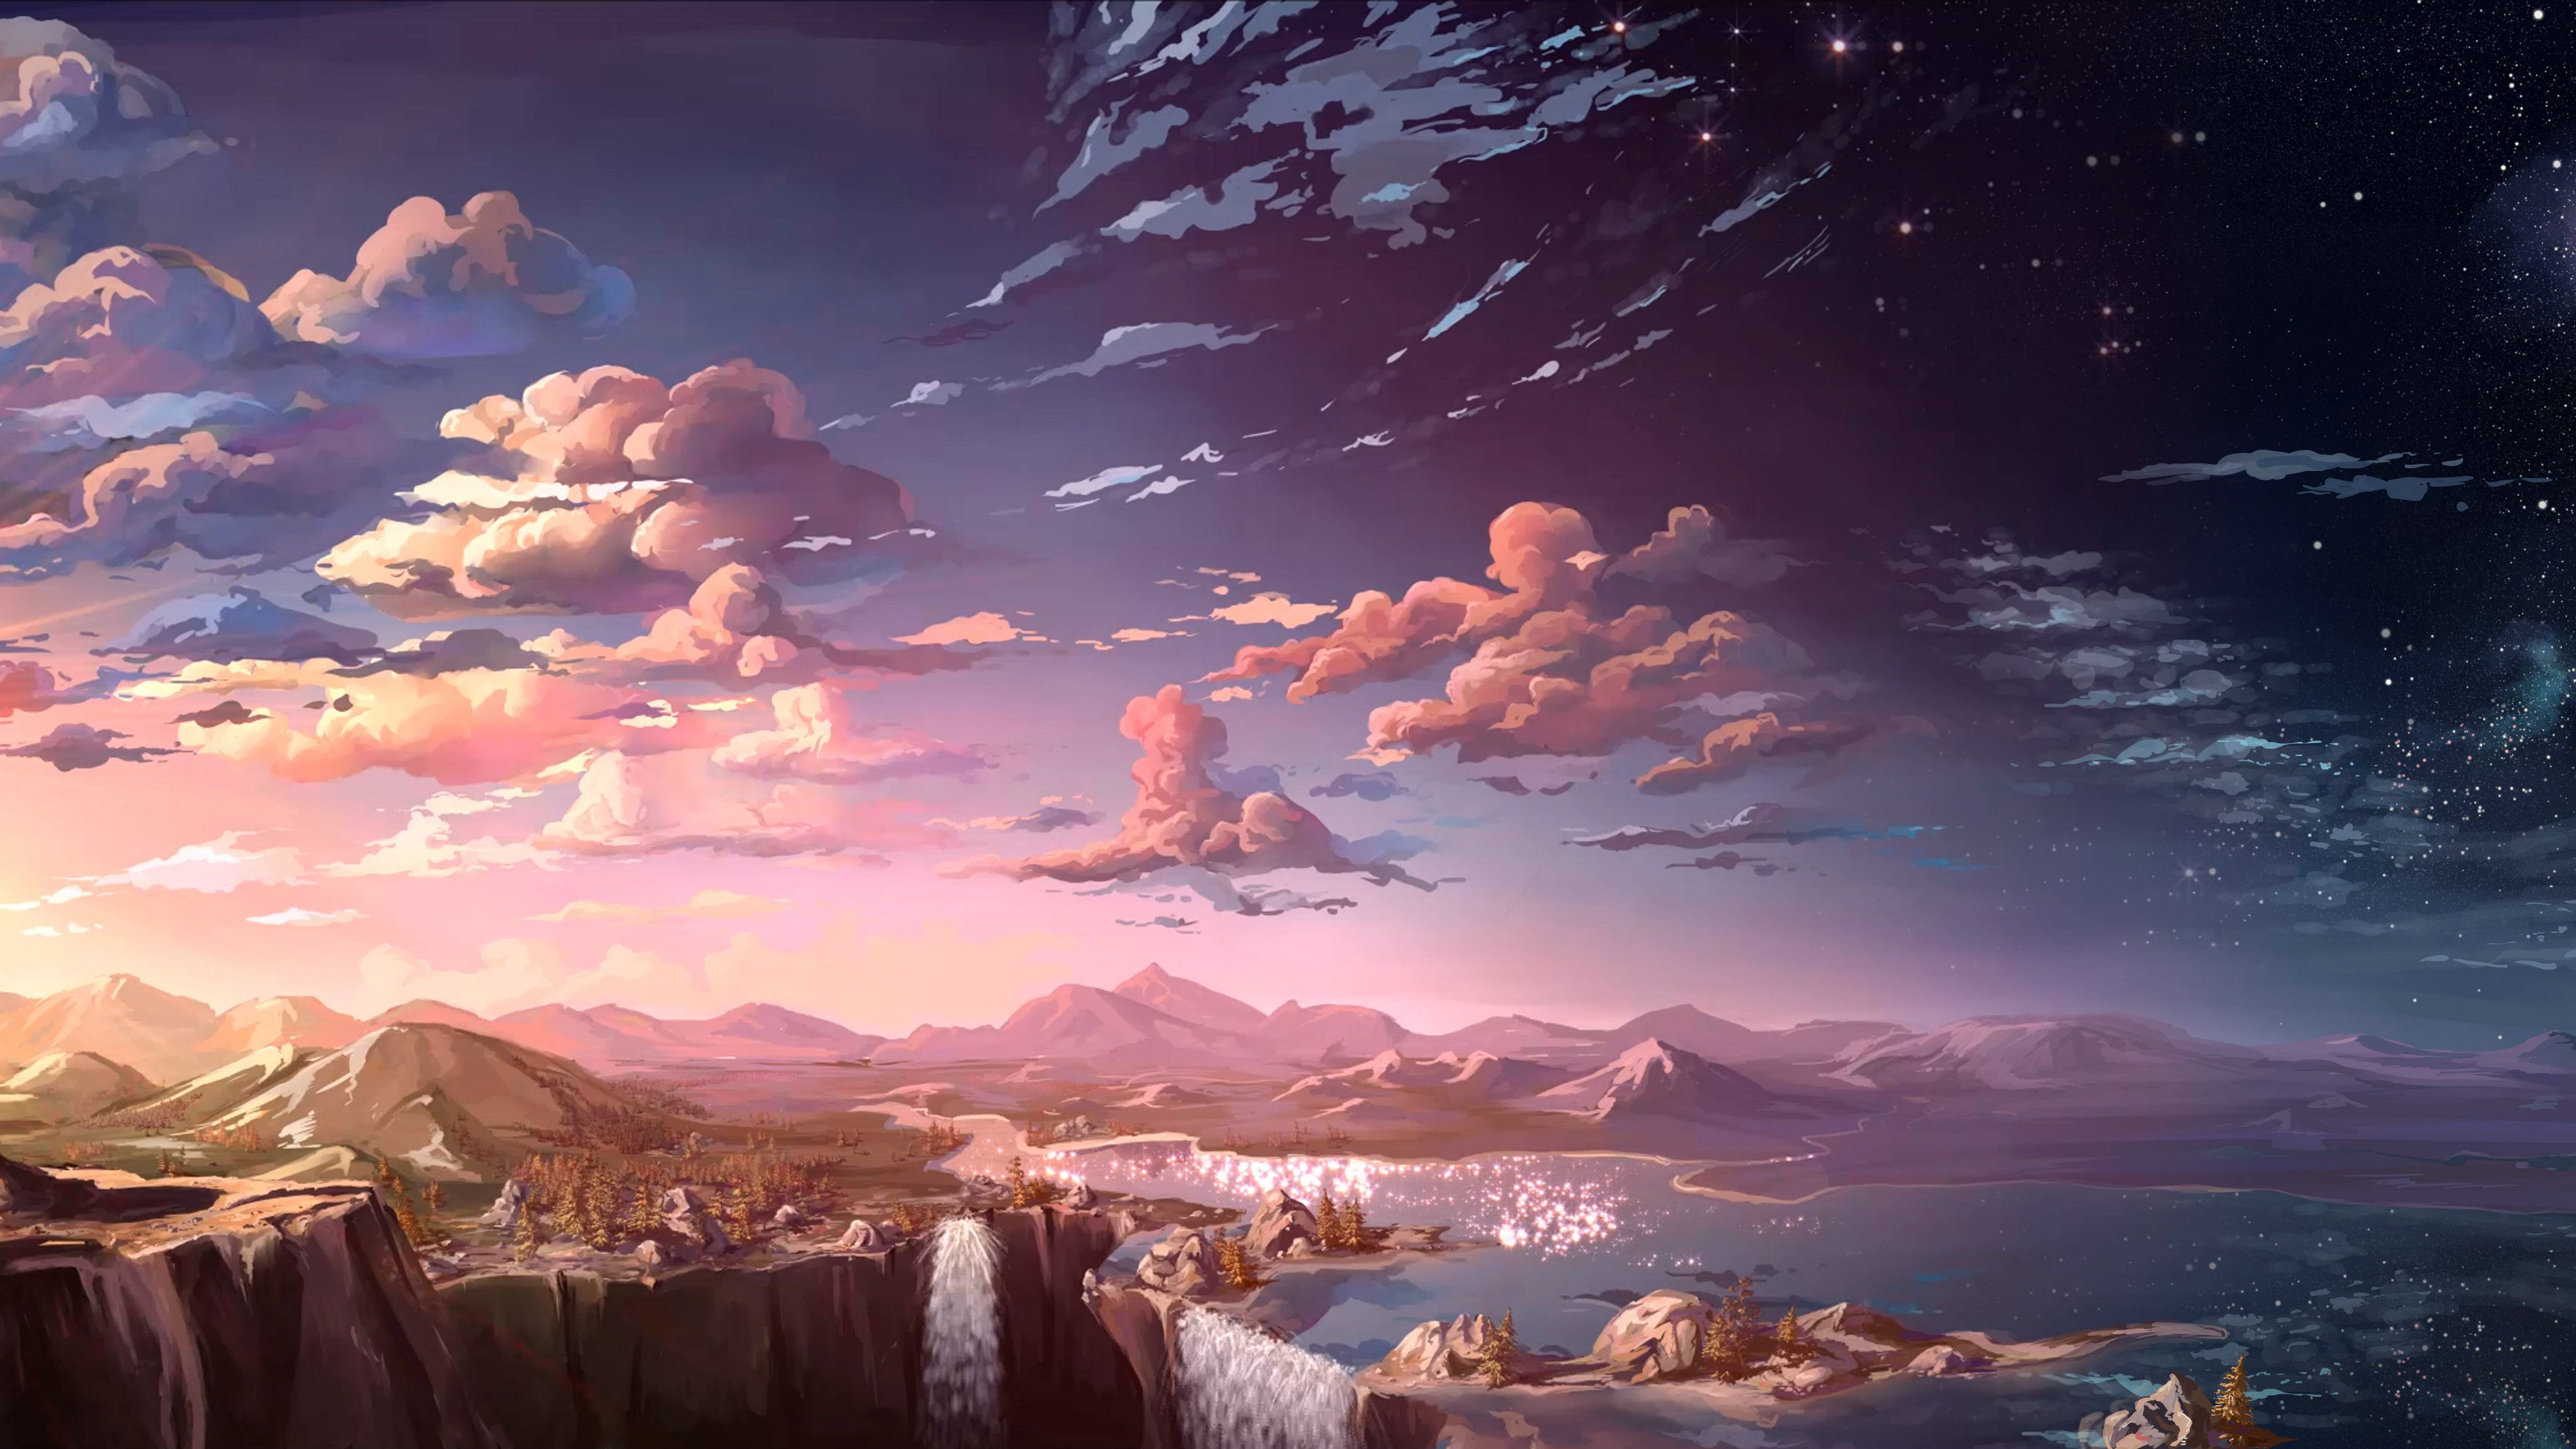 Anime Landscape Waterfall Cloud 5k, HD Anime, 4k Wallpaper